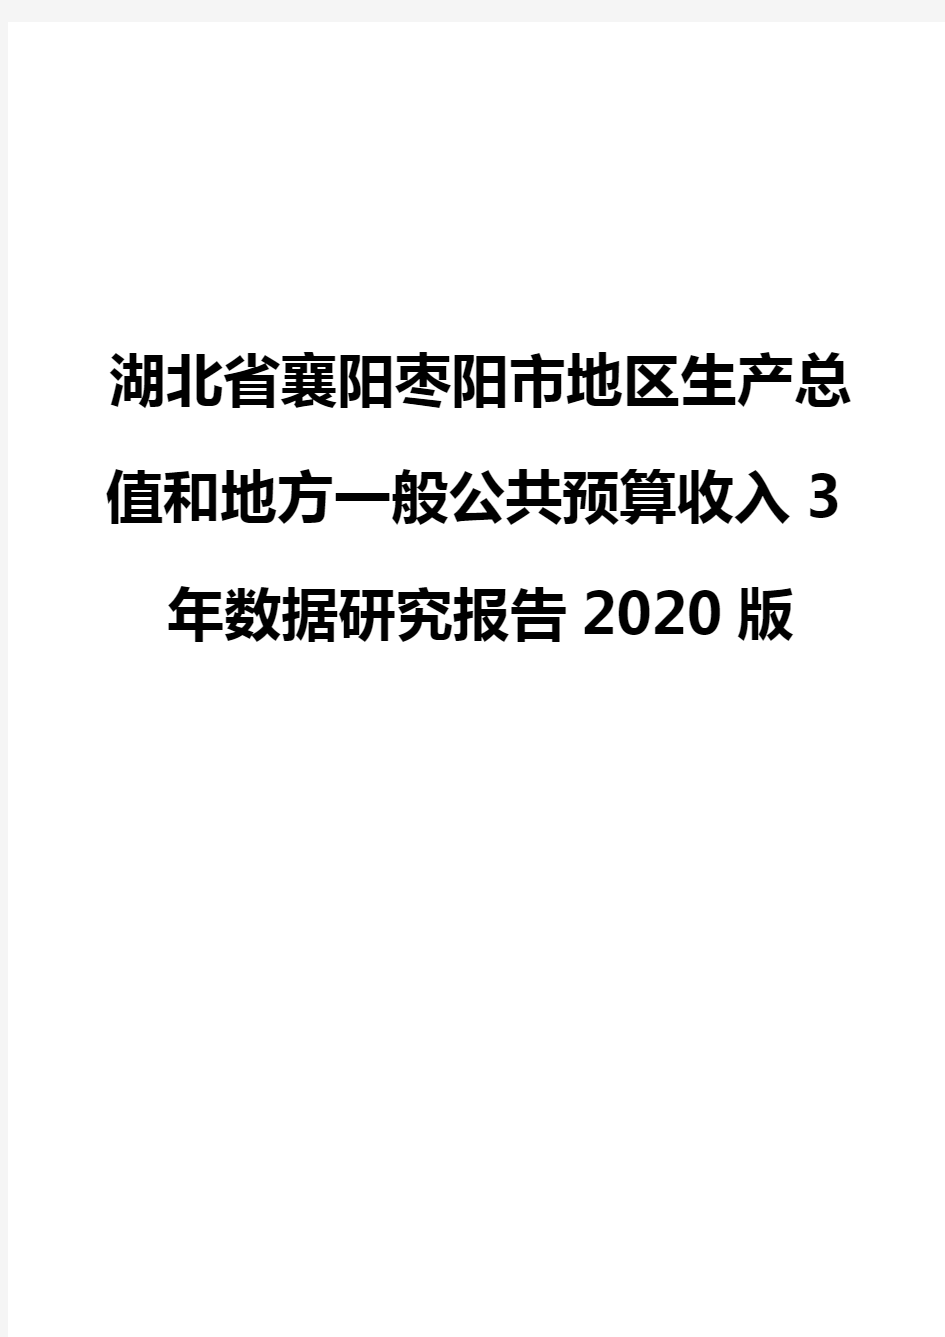 湖北省襄阳枣阳市地区生产总值和地方一般公共预算收入3年数据研究报告2020版